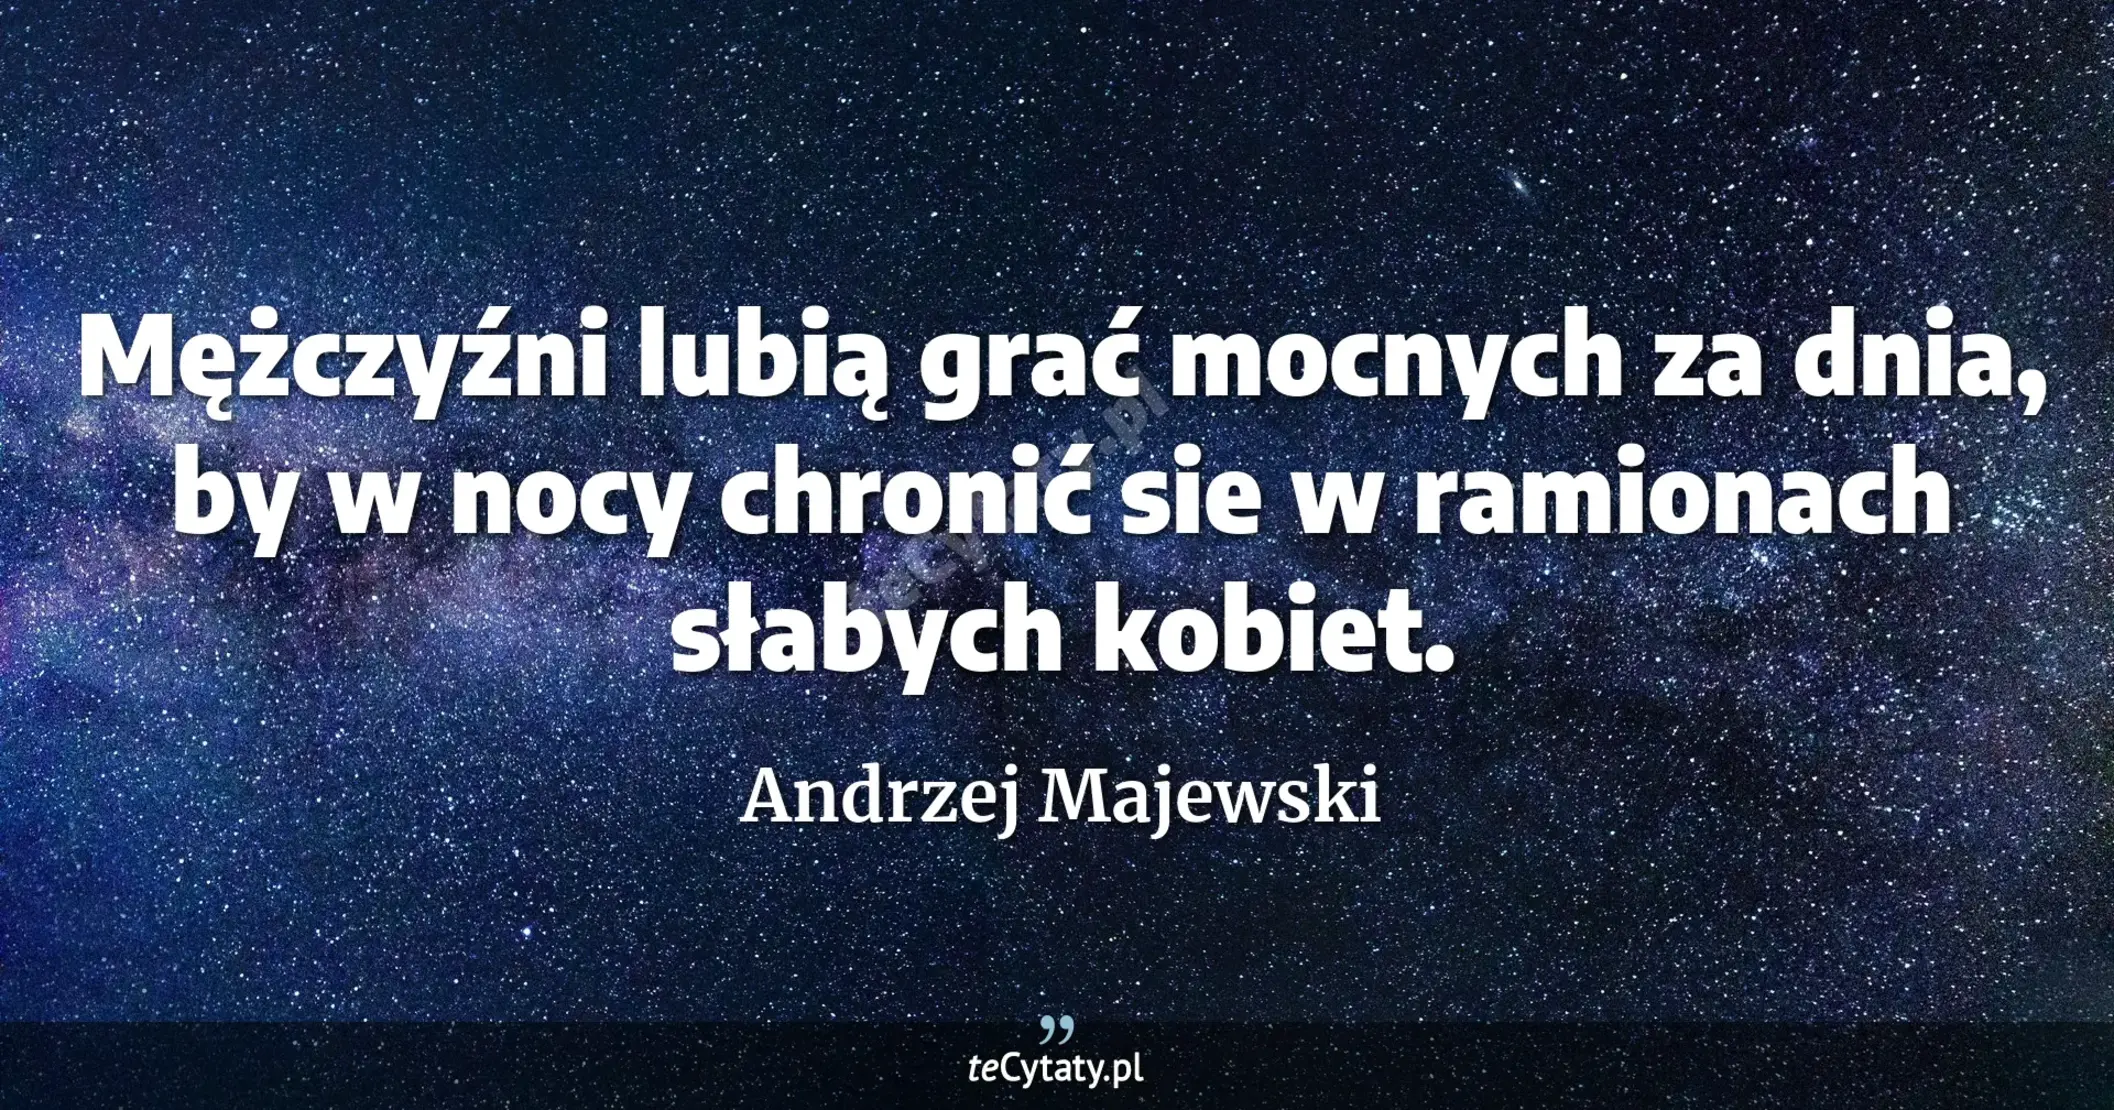 Mężczyźni lubią grać mocnych za dnia, by w nocy chronić sie w ramionach słabych kobiet. - Andrzej Majewski